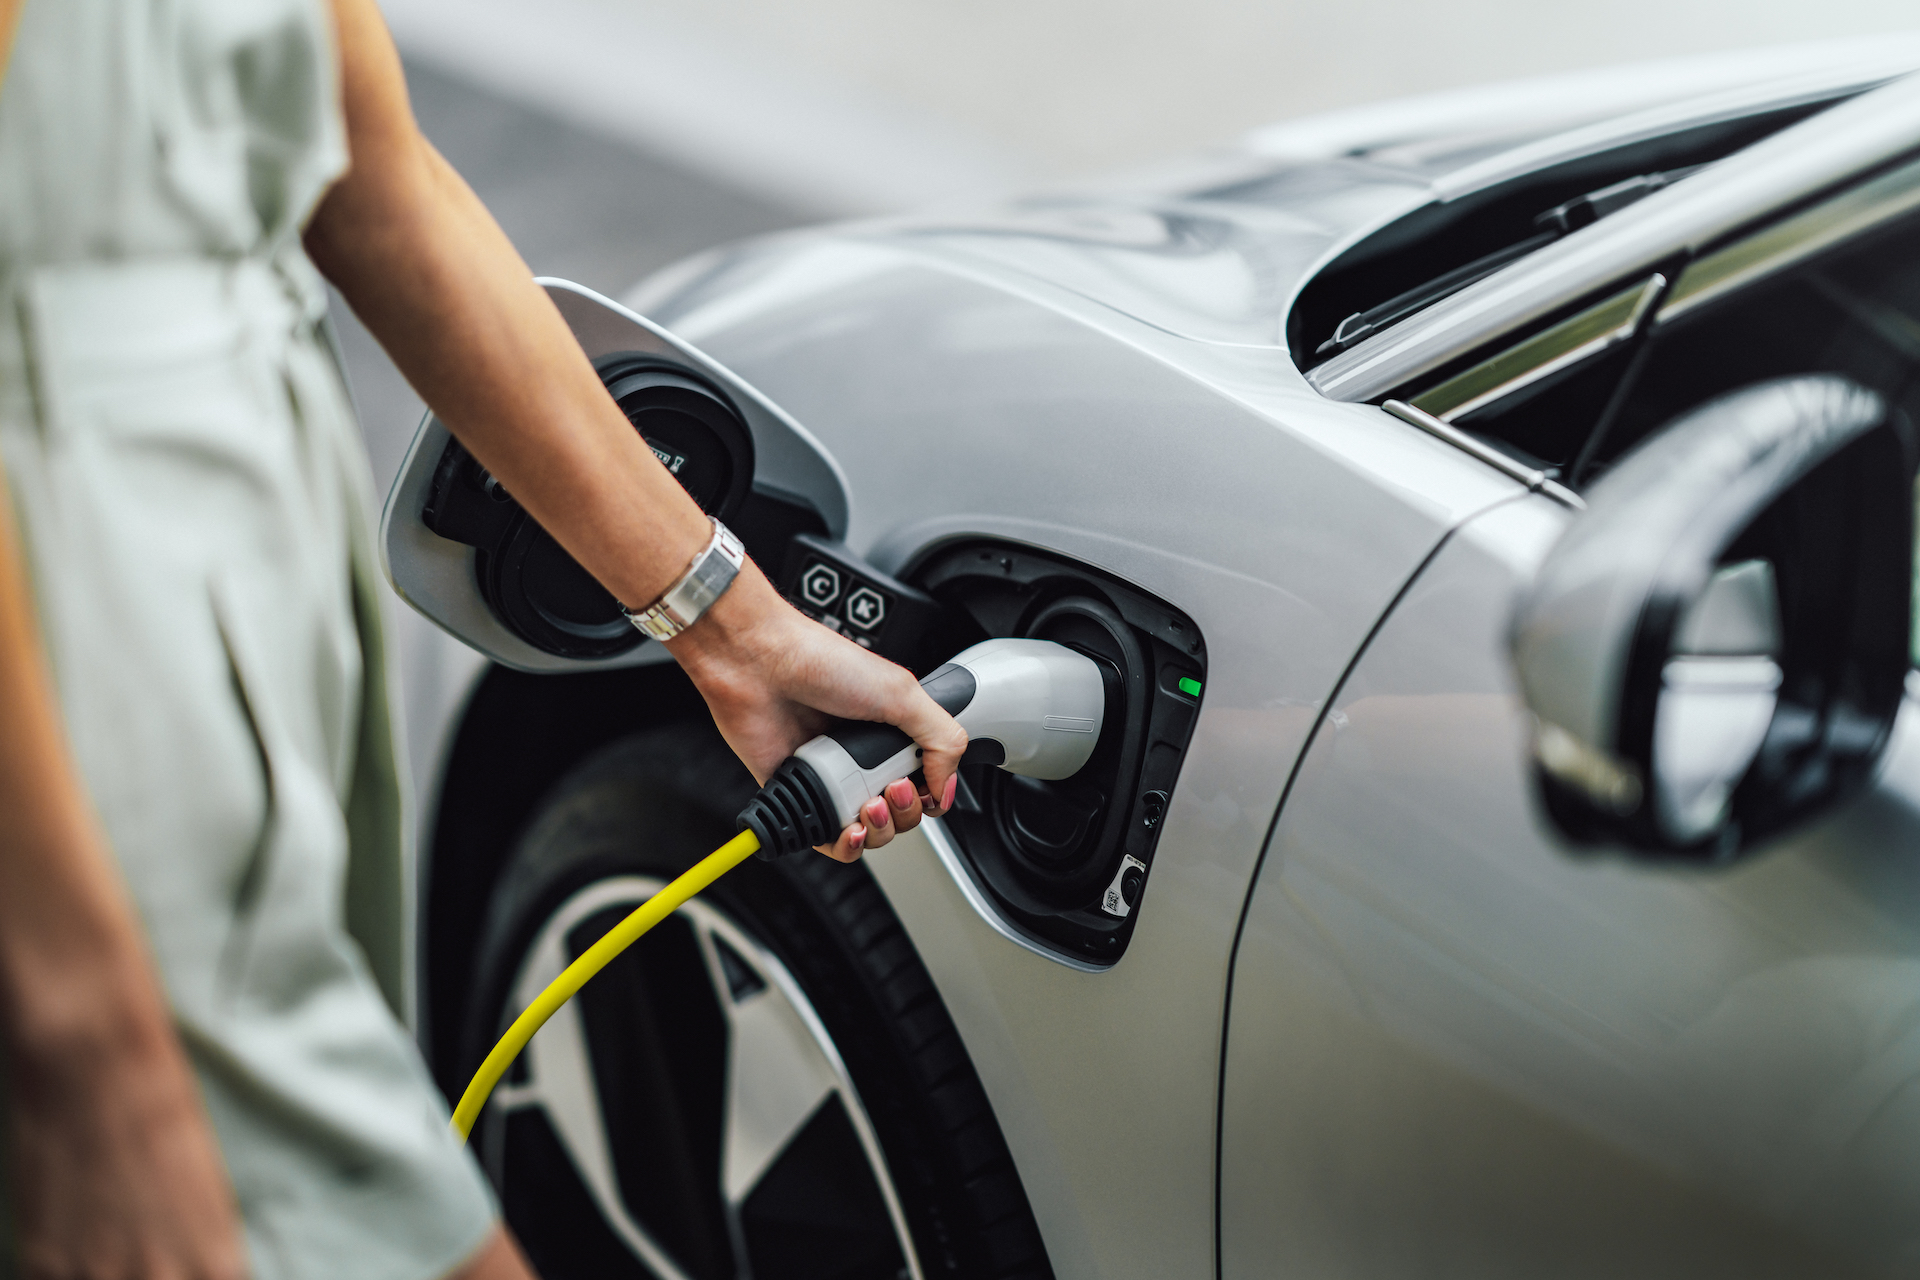 Prise Green'up Legrand pour recharge de véhicules électriques 